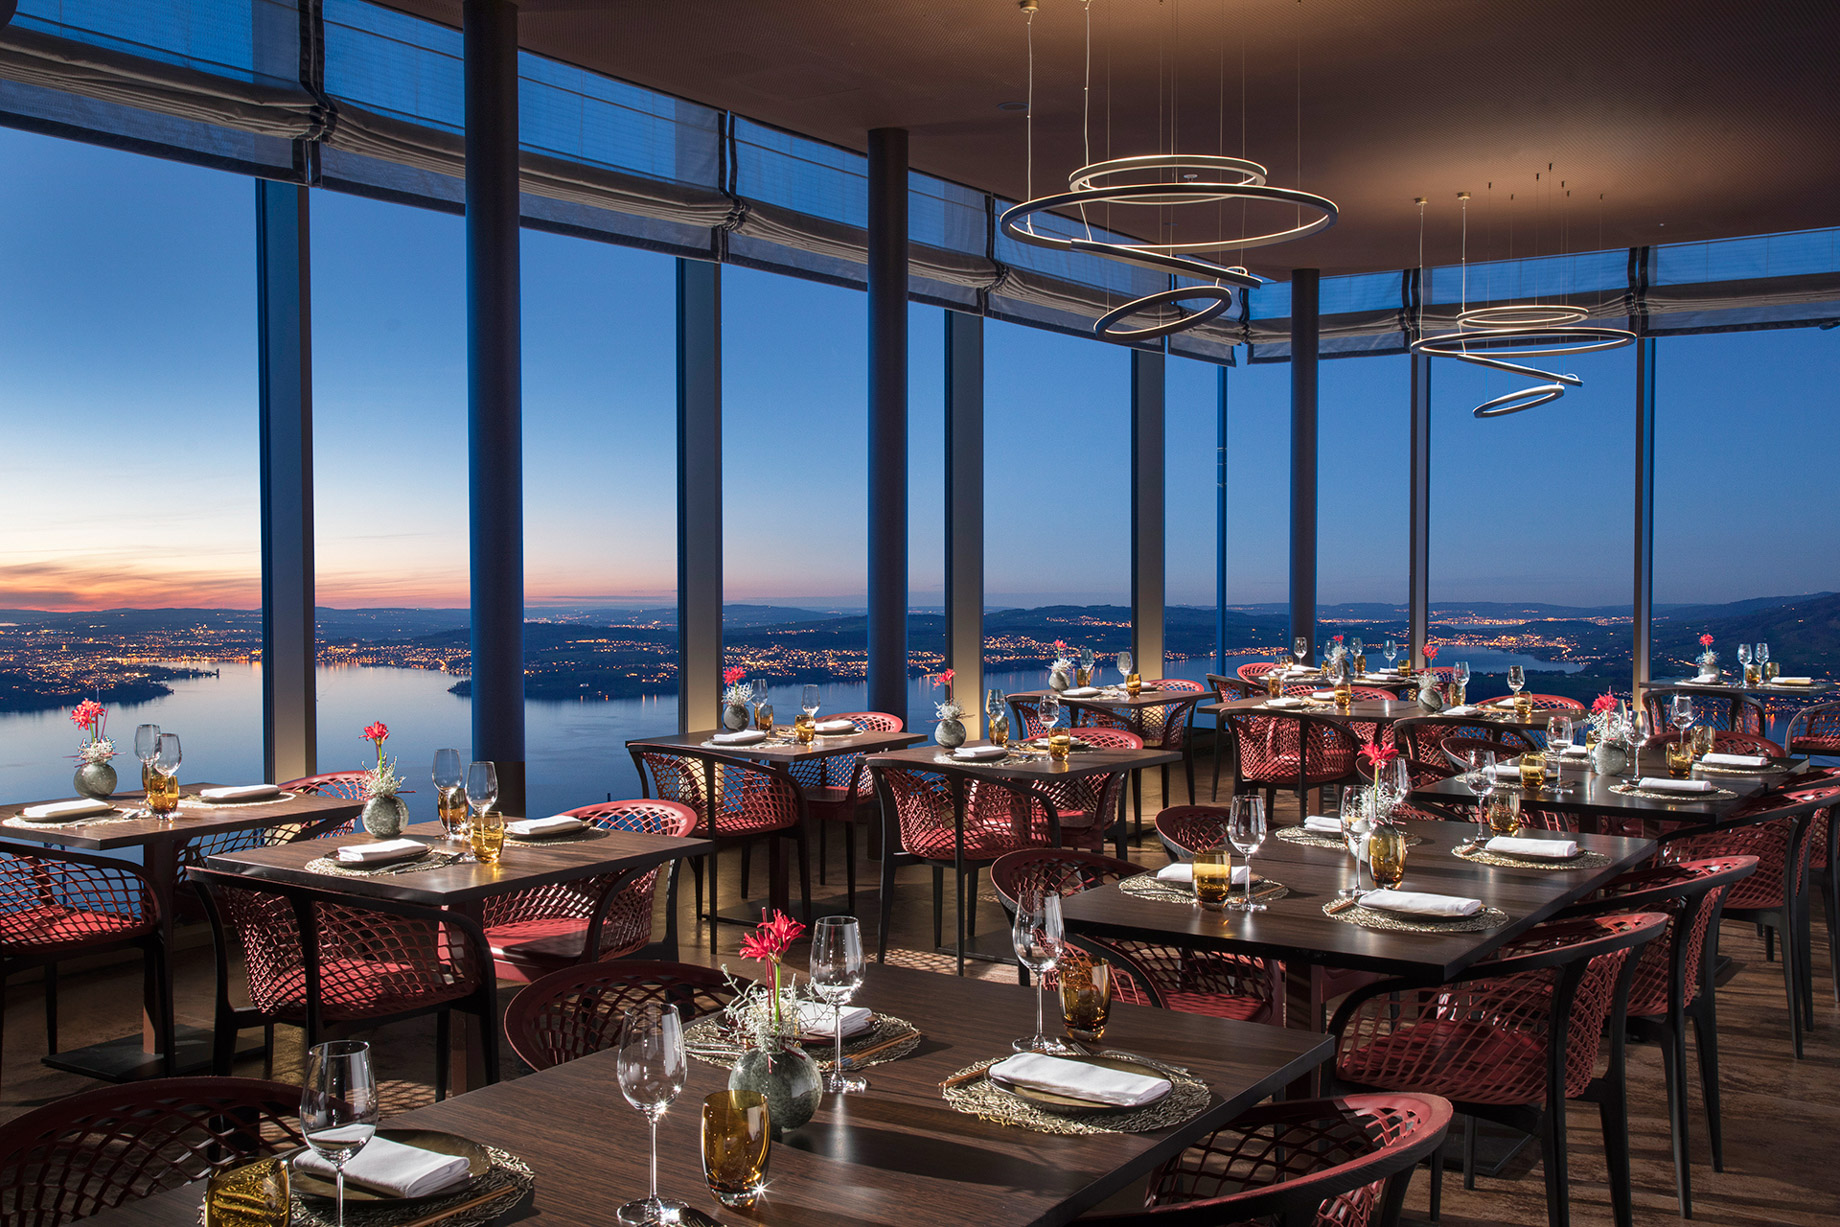 Burgenstock Hotel & Alpine Spa – Obburgen, Switzerland – Spices Kitchen & Terrace Restaurant Interior Evening View